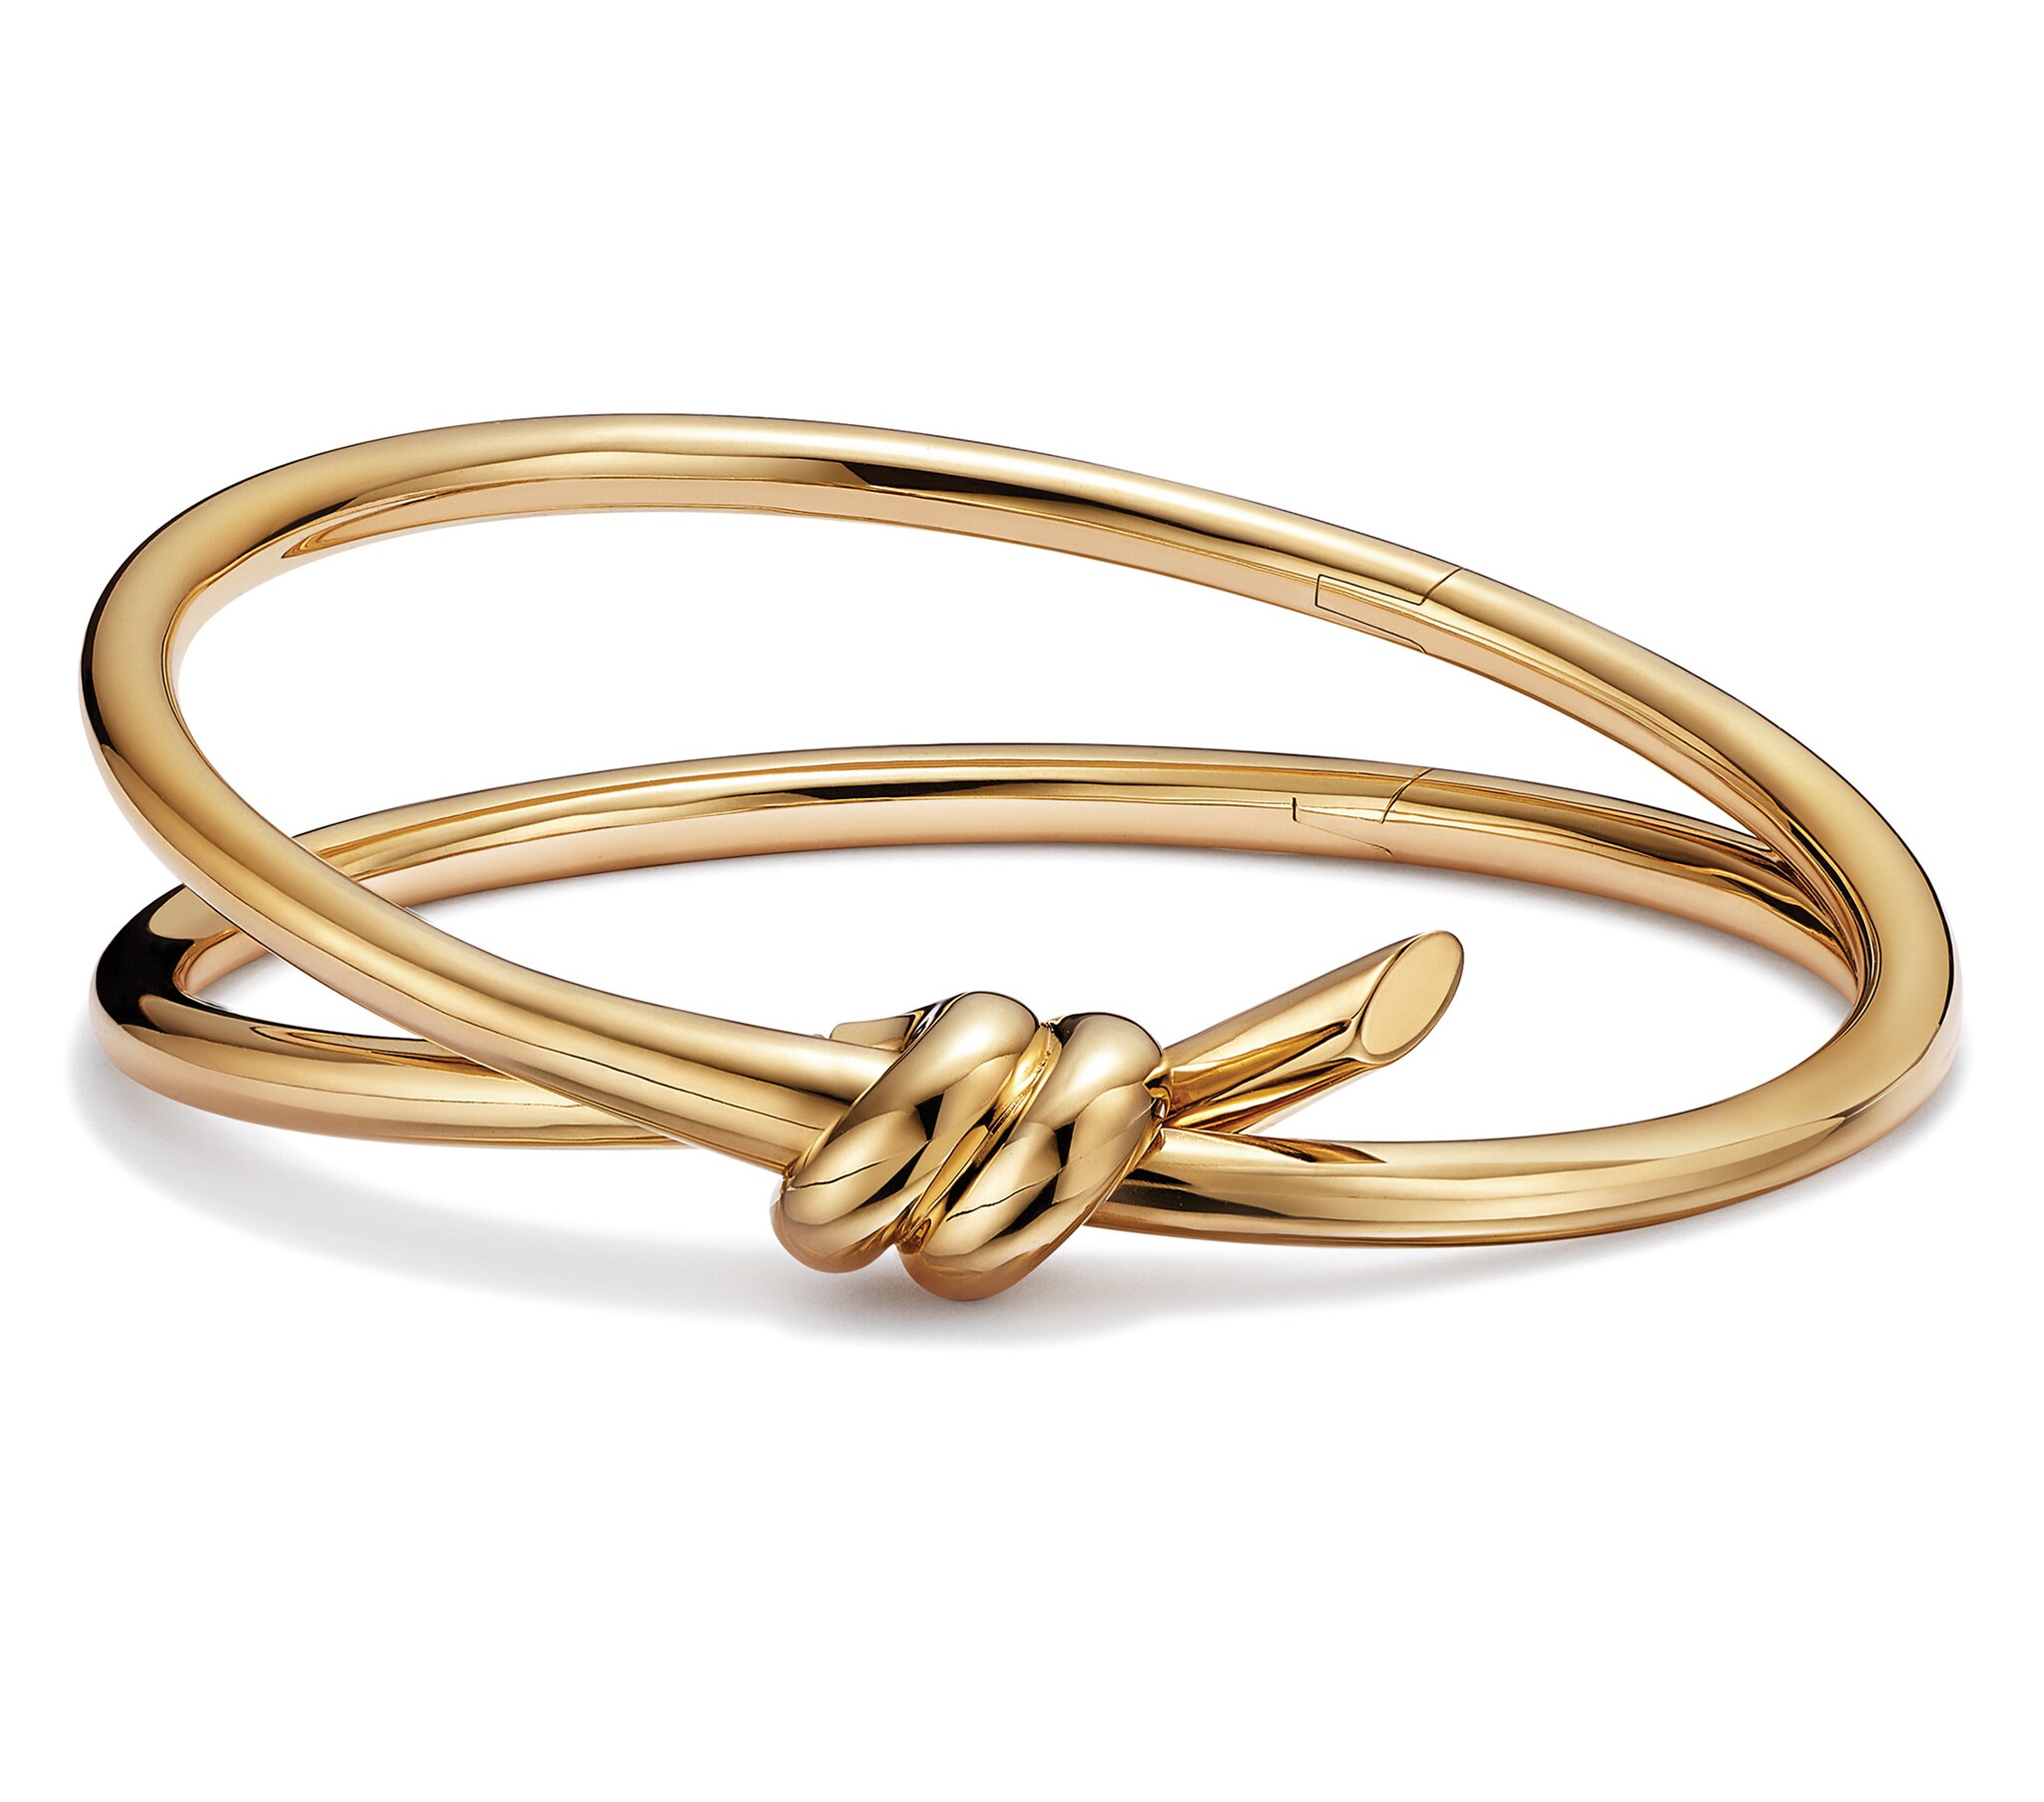 Tiffany & Co. The Knot, rigido a doppio filo in oro giallo.